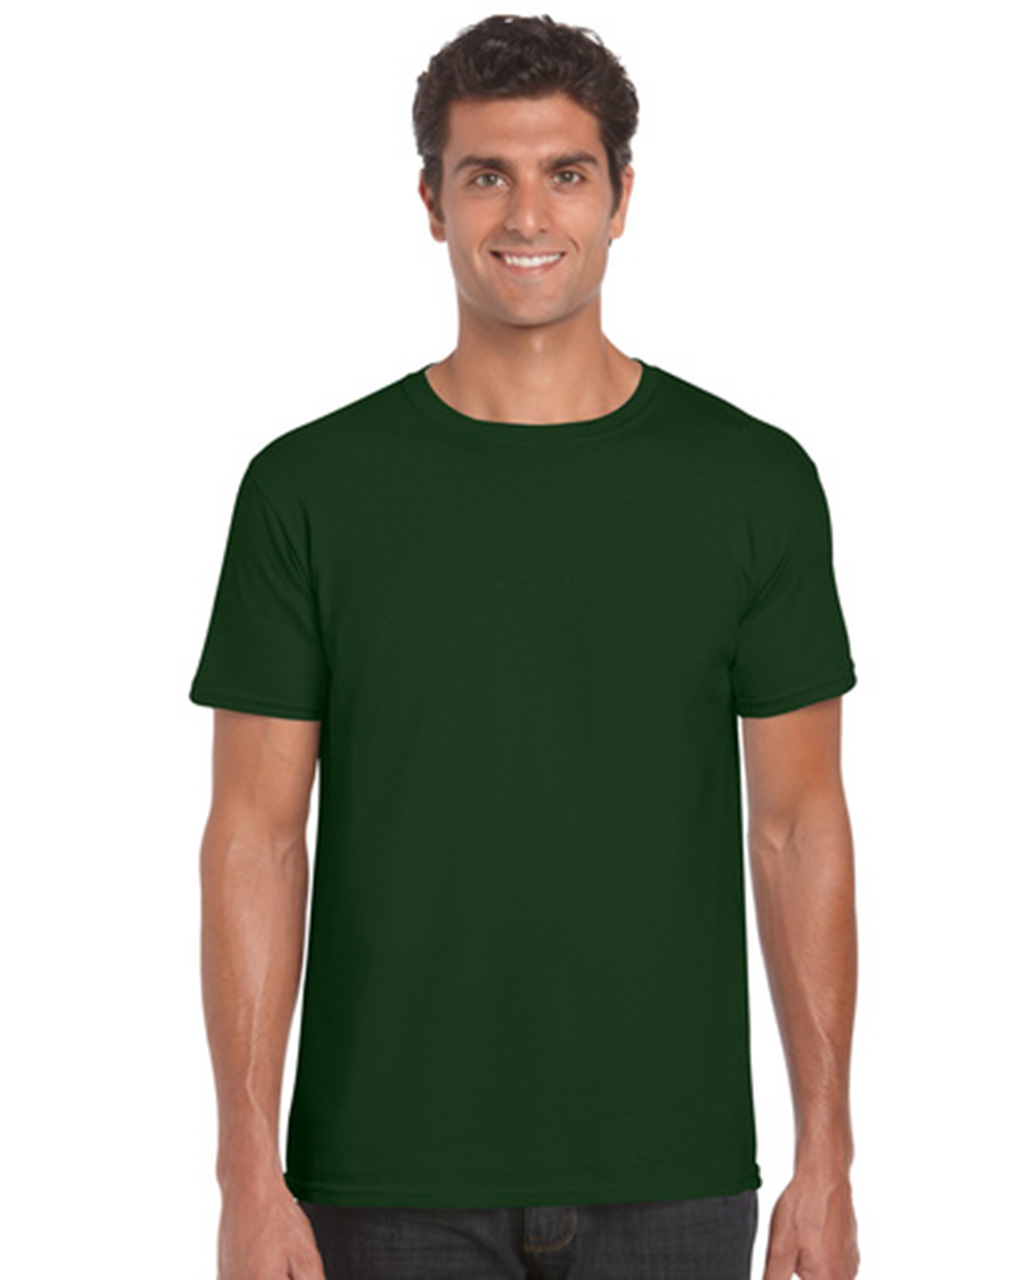 Kedai Toko Baju  Tshirt Online Budget Murah Anda 2013 